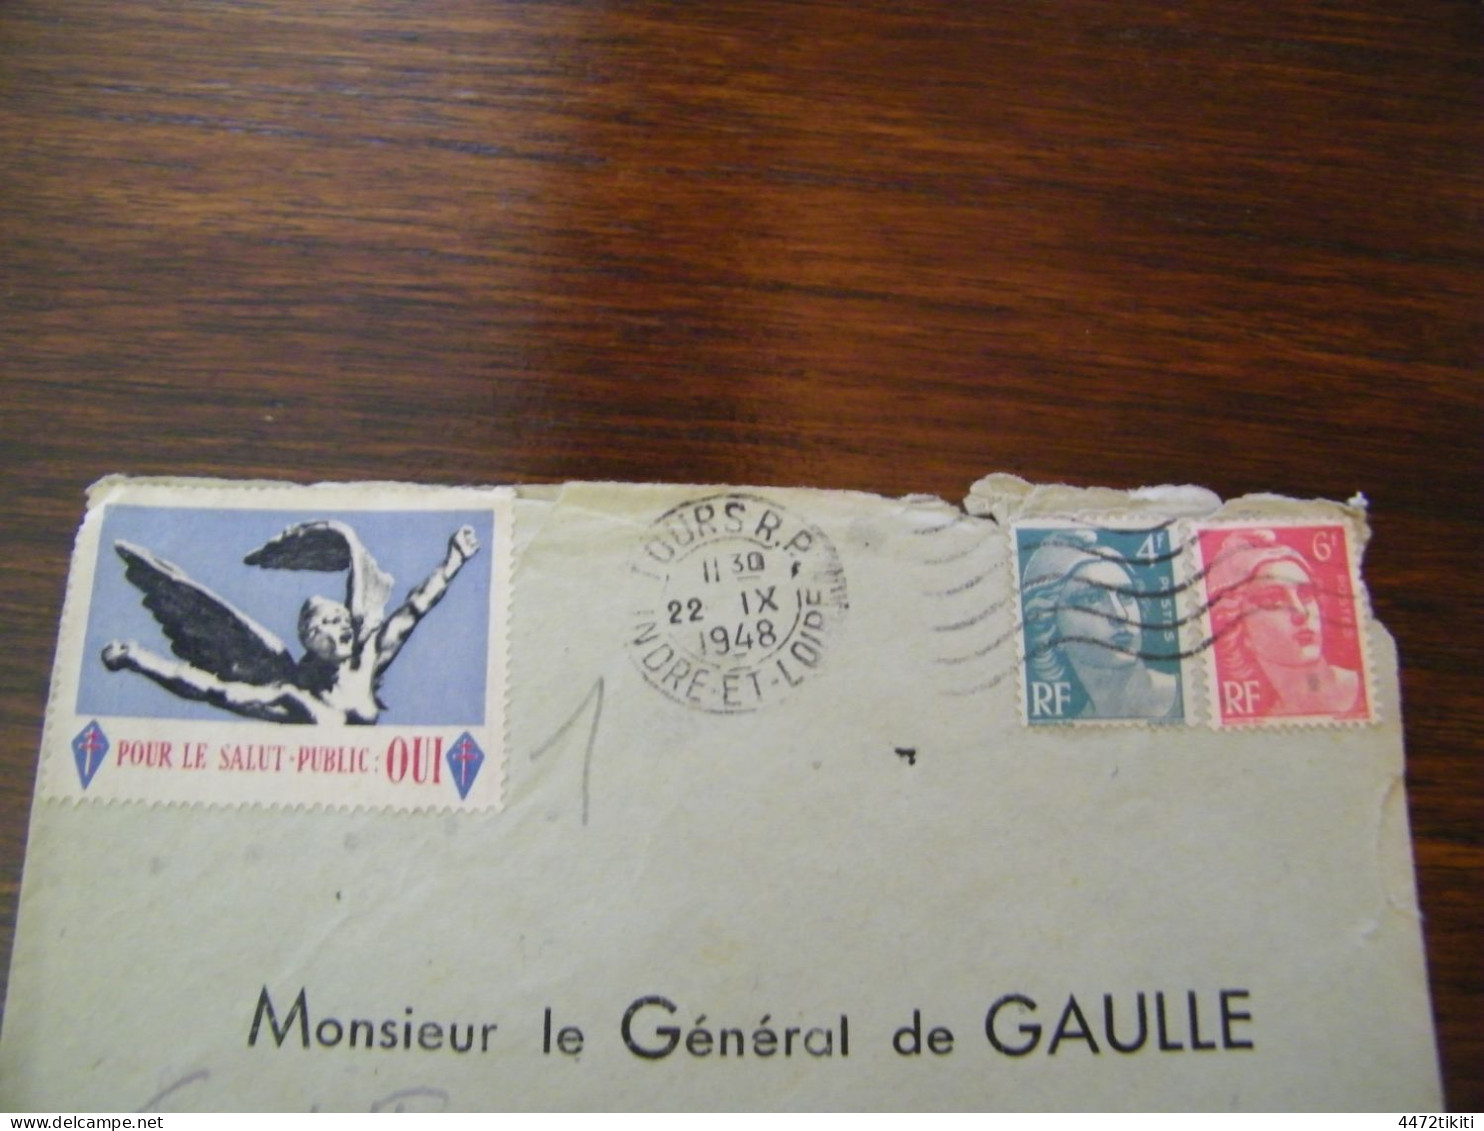 Lettre Général Charles De Gaulle à Colombey Les Deux Eglises  - Vignette Pour Le Salut Public : Oui - 1948 - SUP (HL 95) - De Gaulle (Général)